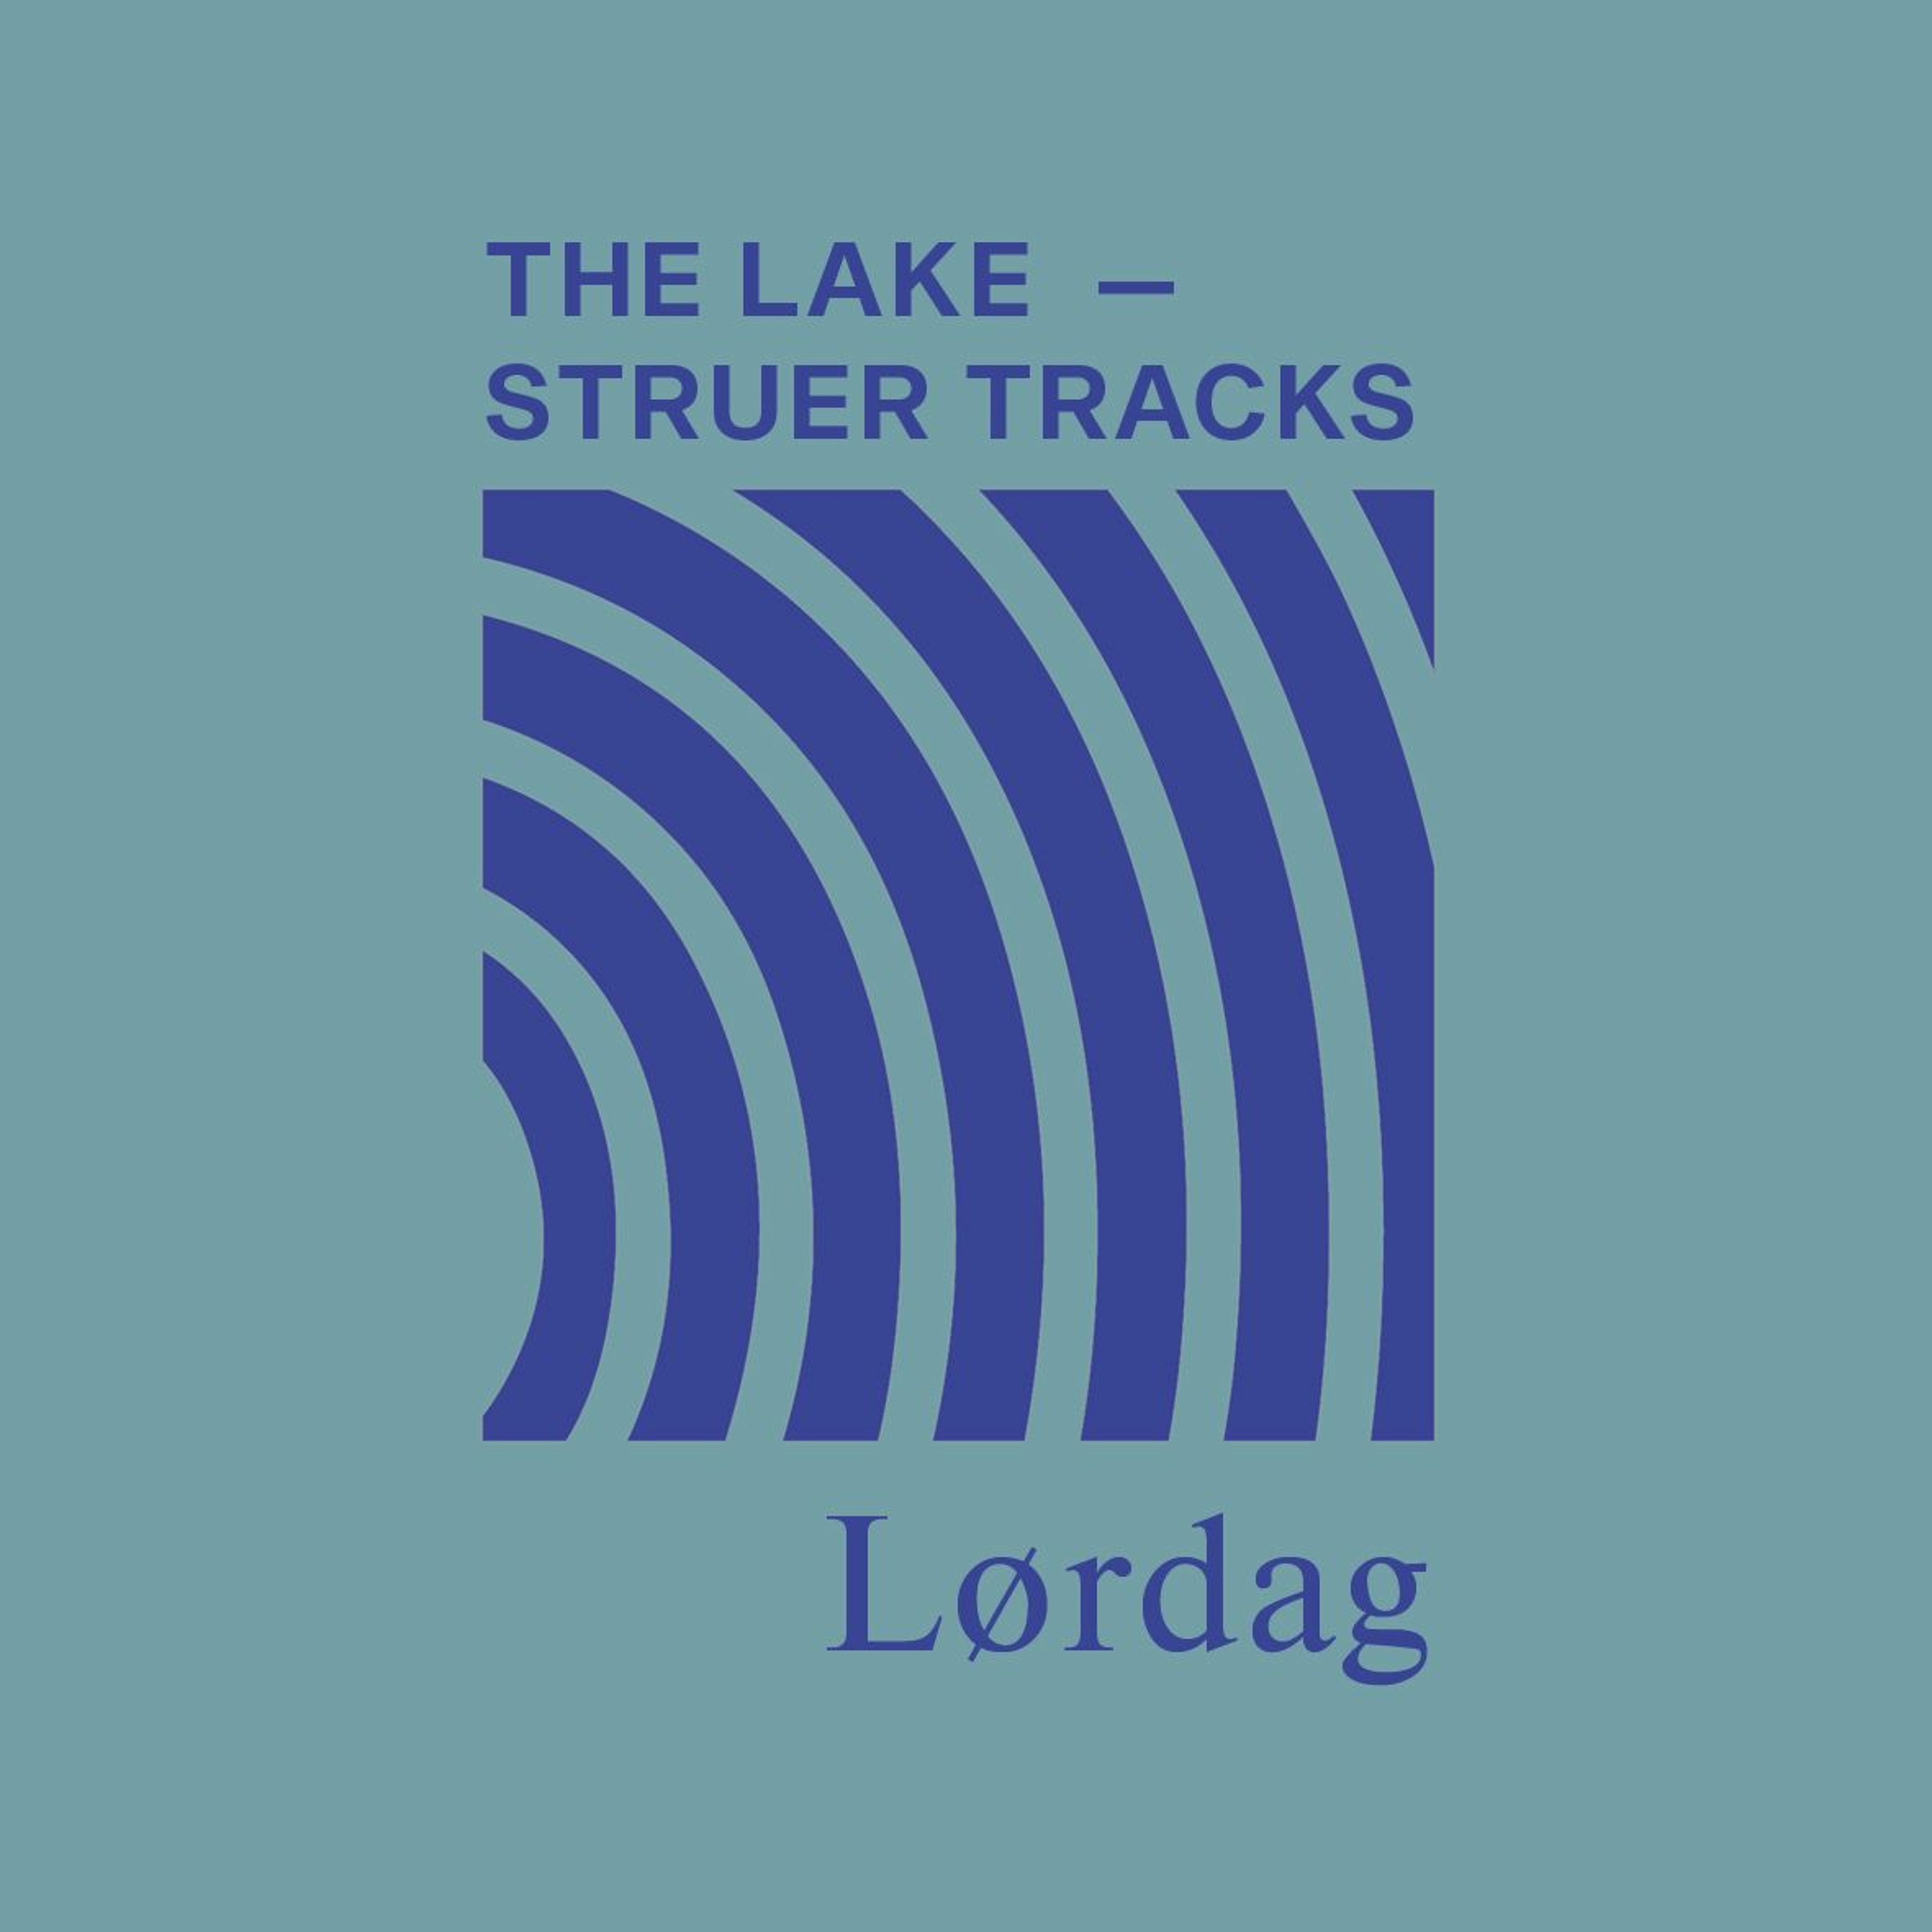 The Lake ⏤ Struer Tracks: Lørdag